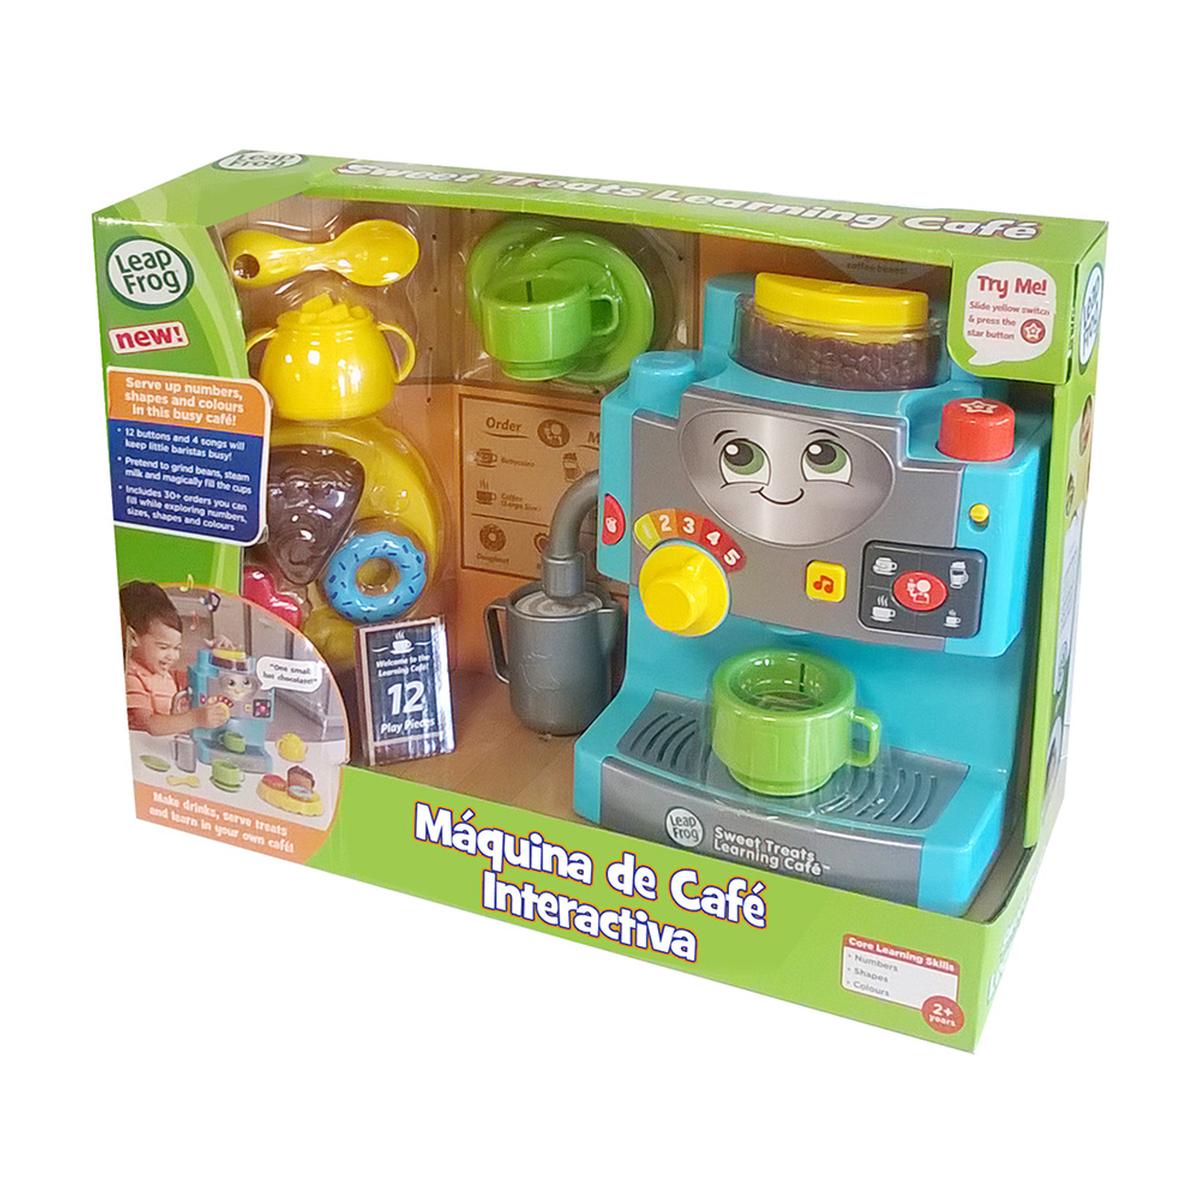 Cefa - Máquina de Café Interactiva | Leapfrog | Toys"R"Us España